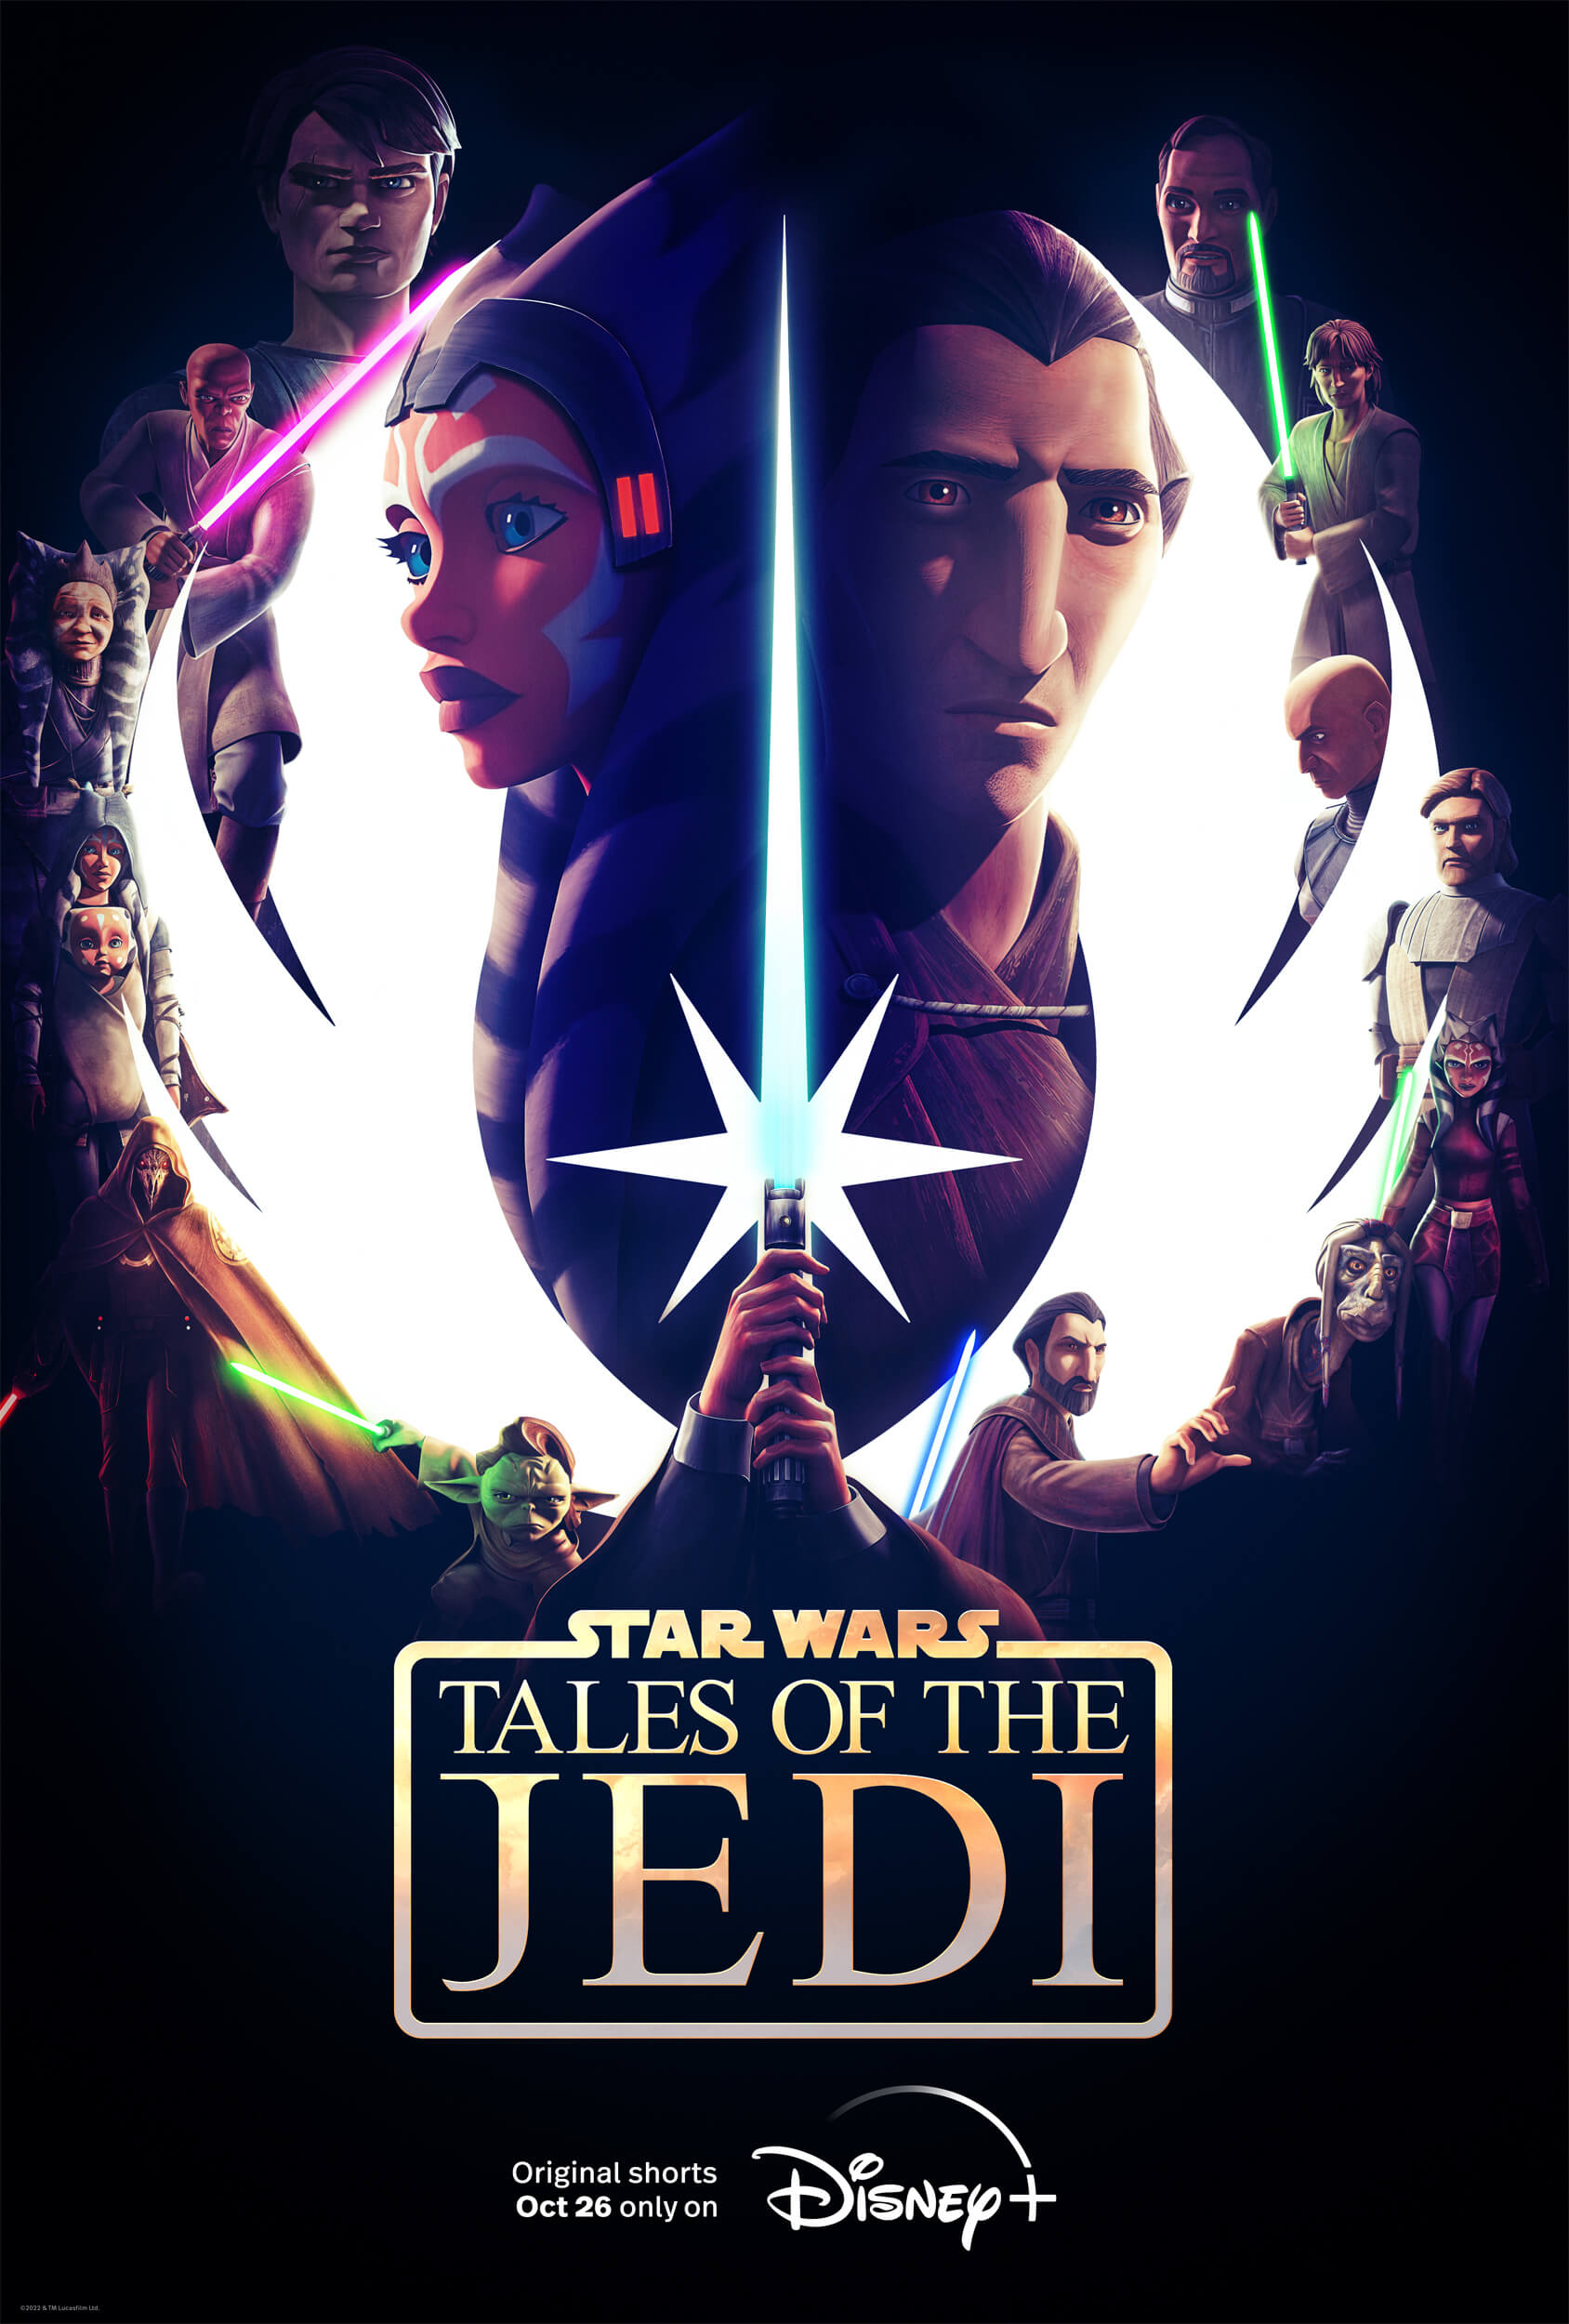 Star Wars: Tales of The Jedi on Disney+